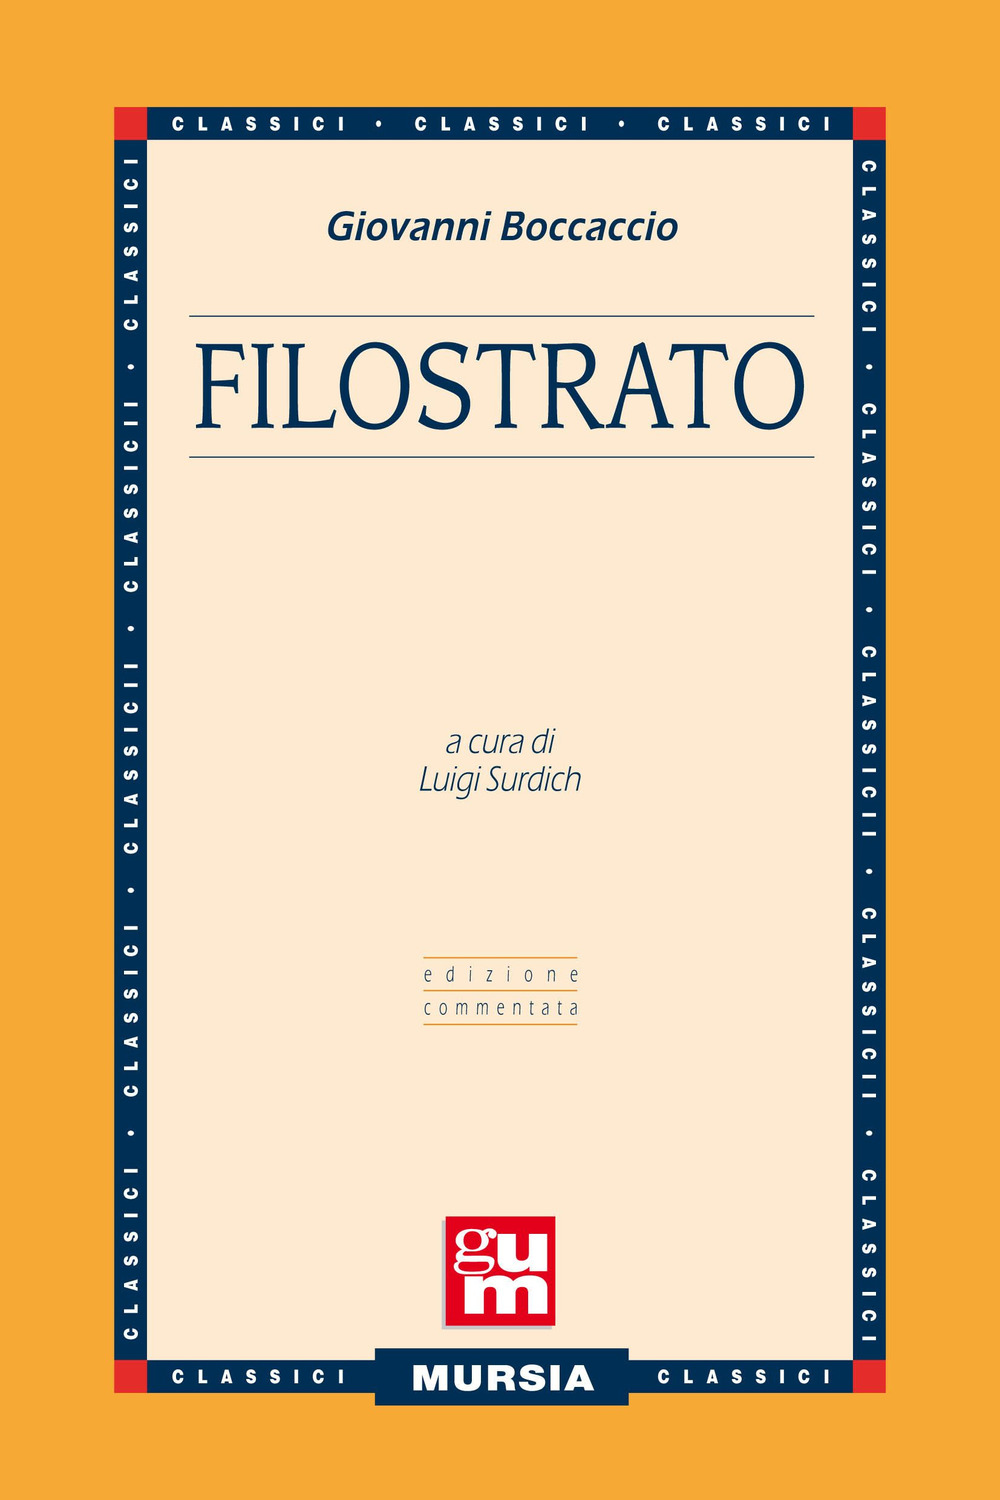 Filostrato